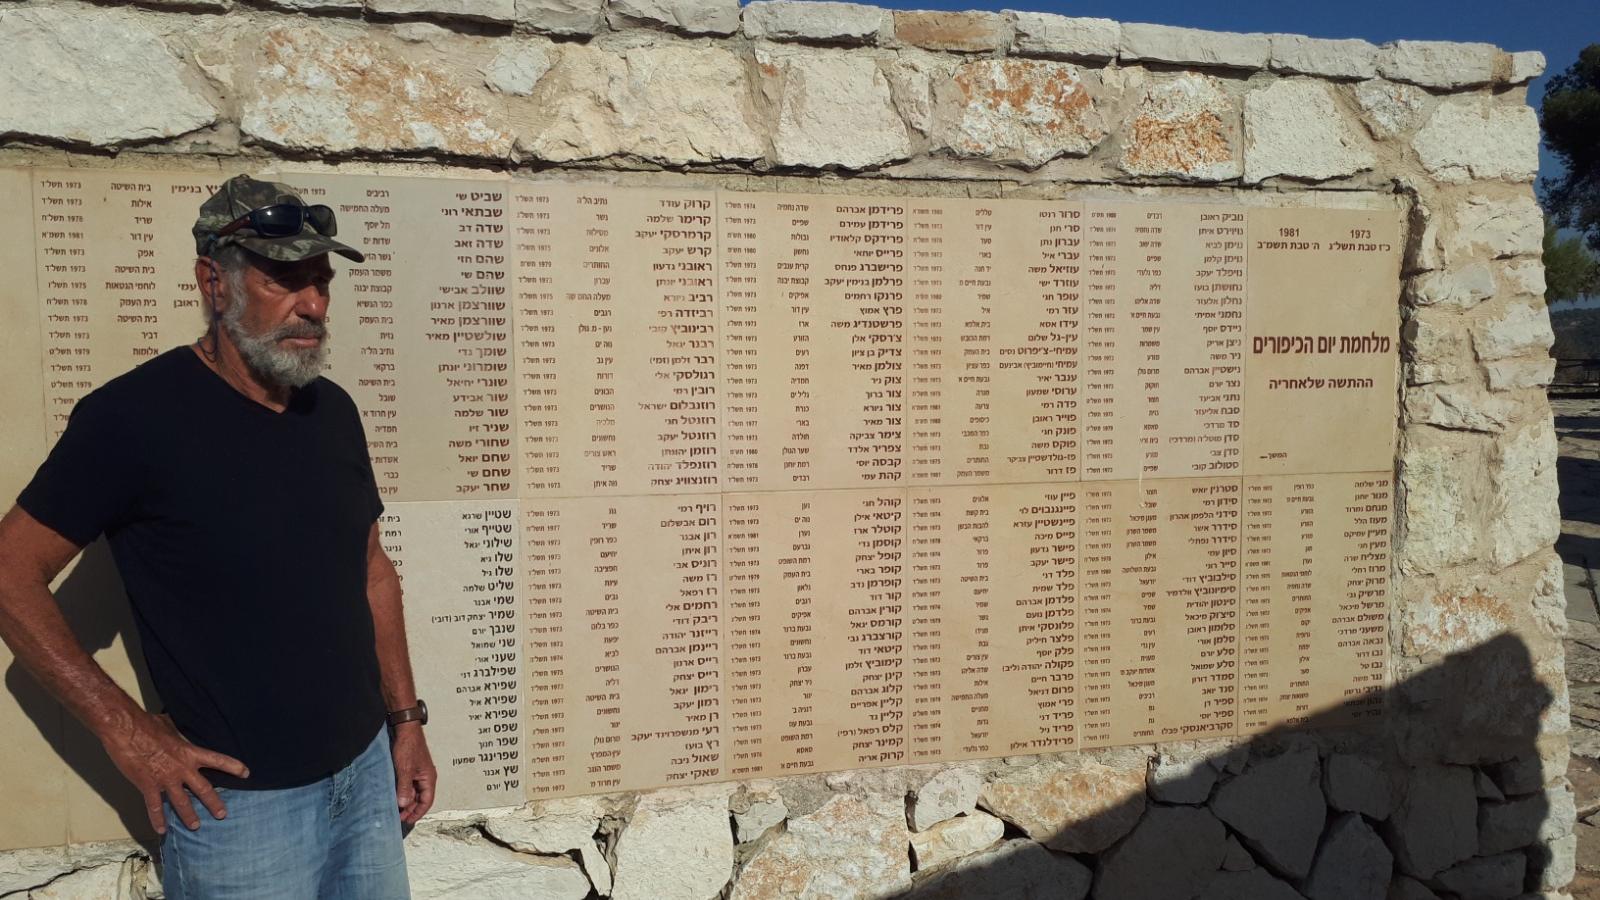 אמנון ישראלי מעין השופט שלחם בחזית הדרום במלחמת יום כיפור ליד הקיר באנדרטה בו חקוקים שמות הנופלים